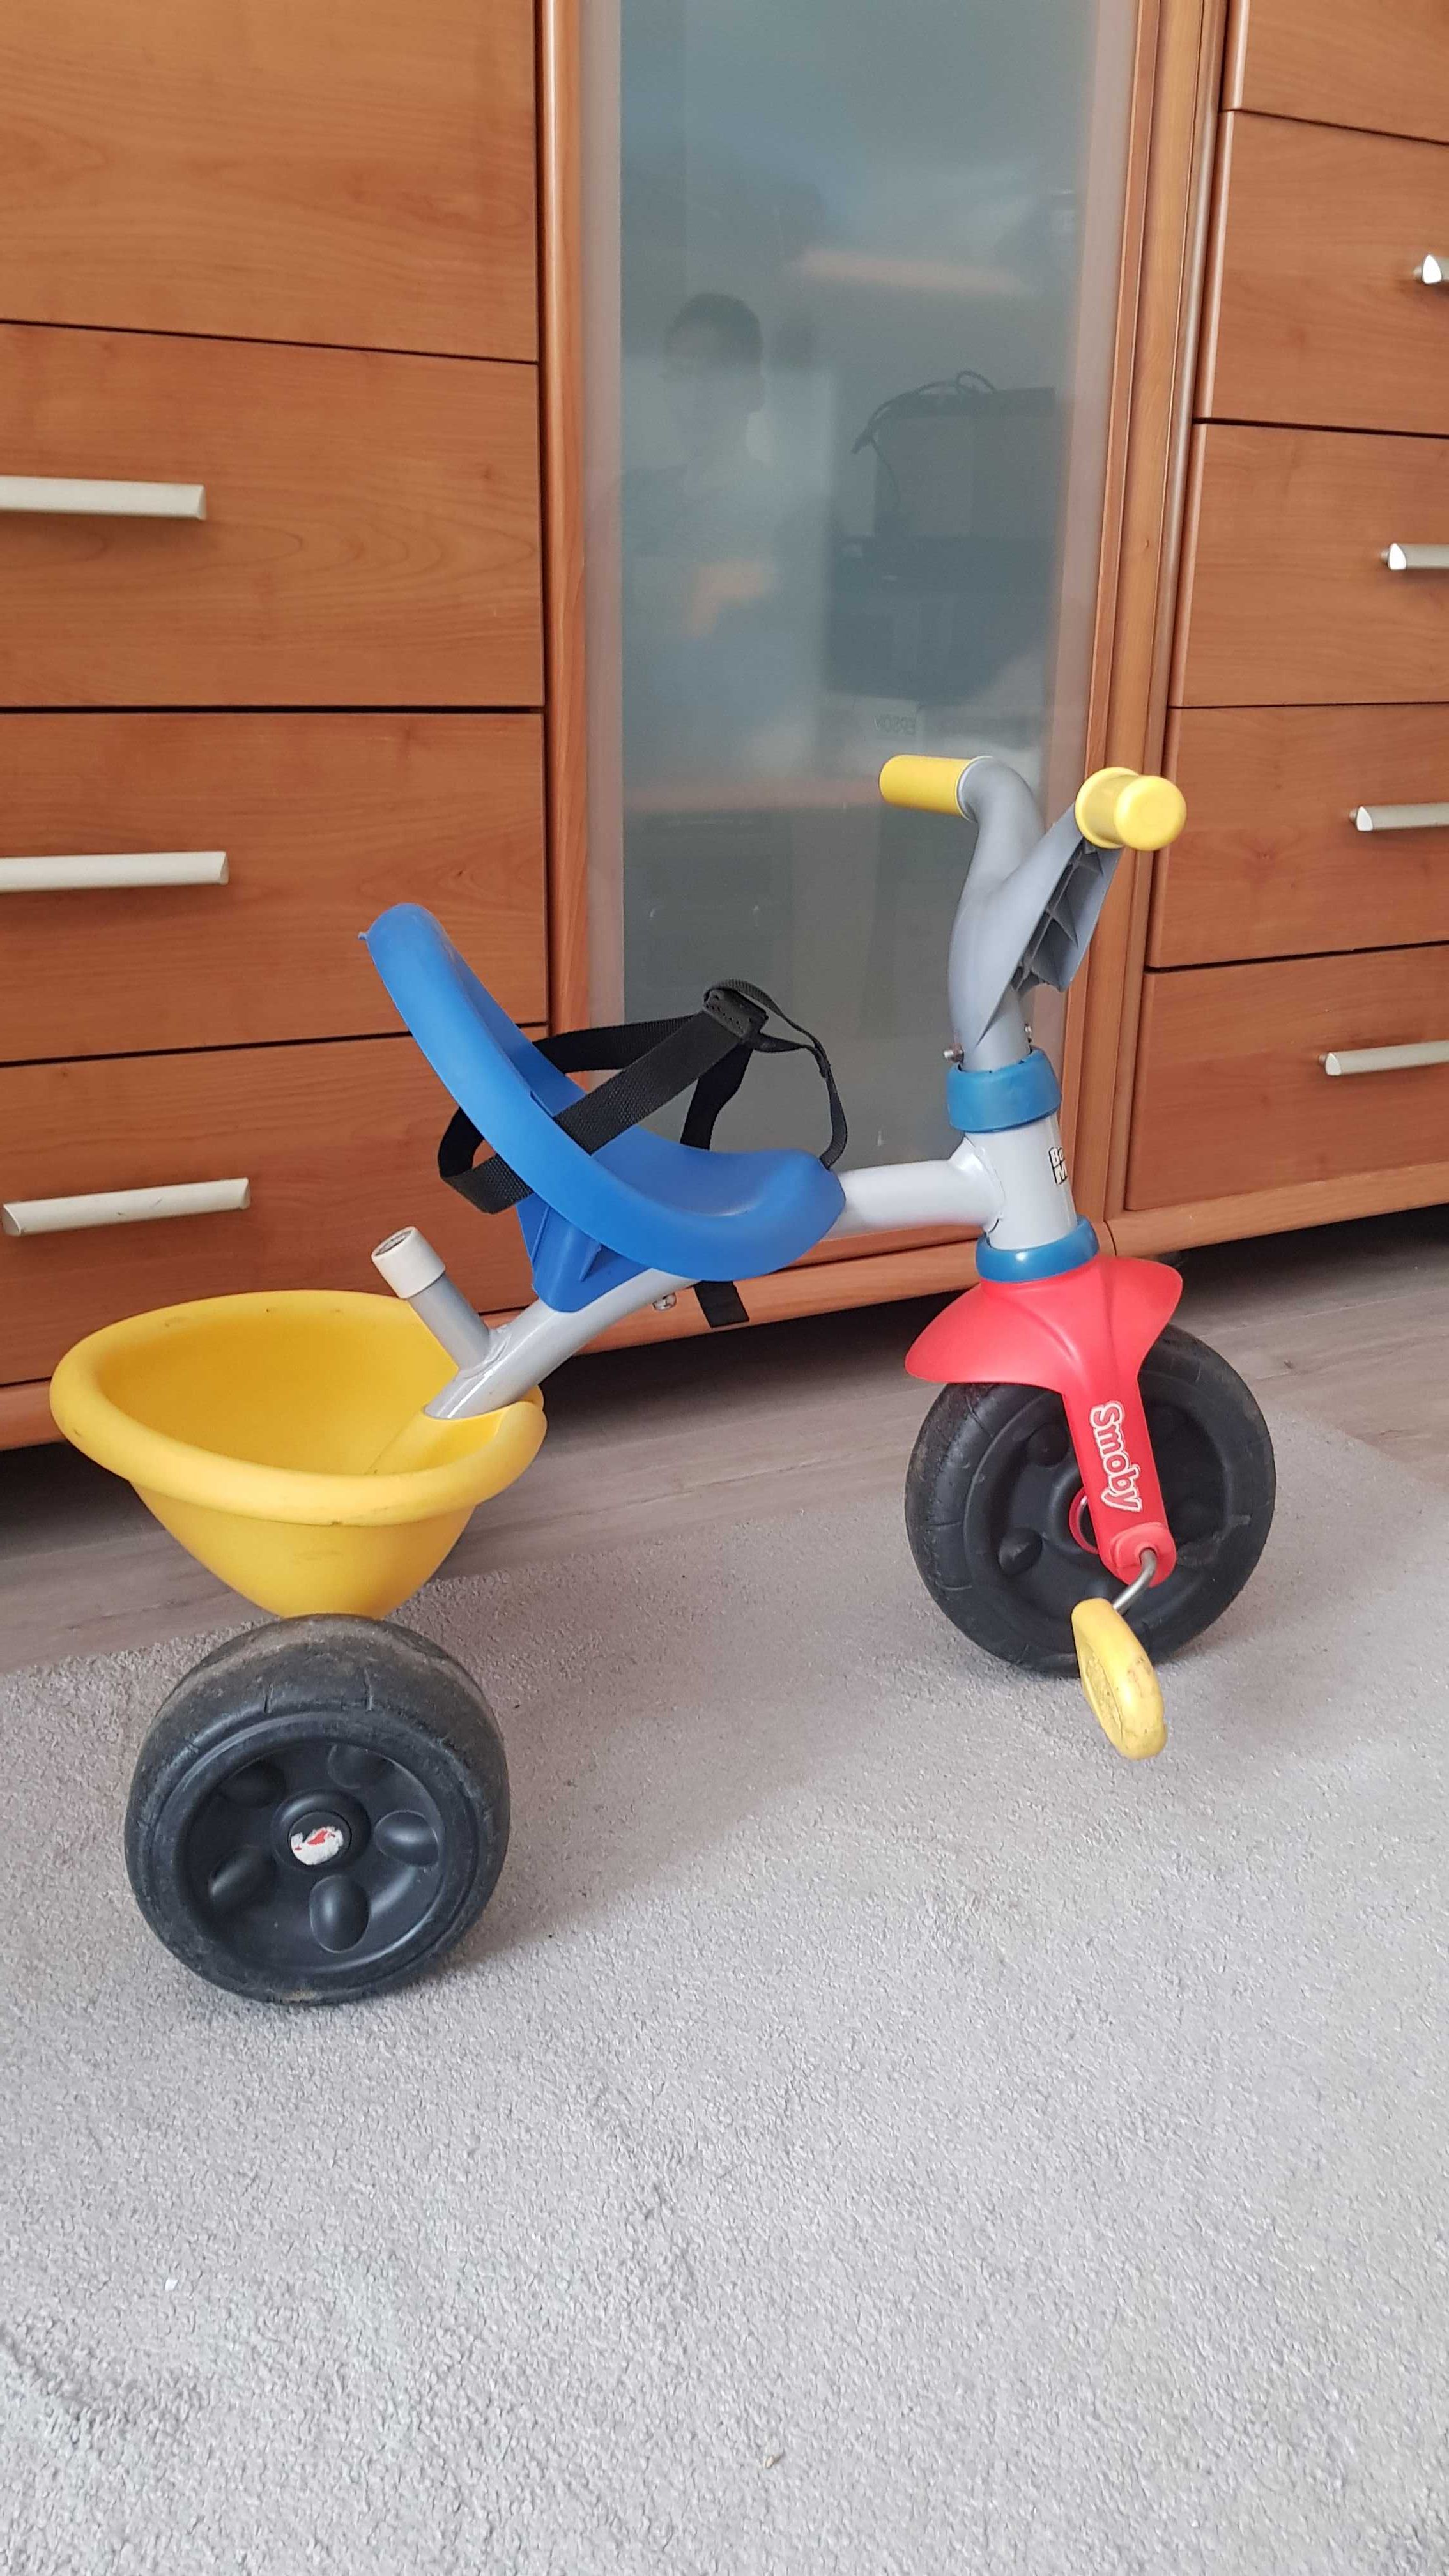 Rowerek dla najmłodszych dzieci